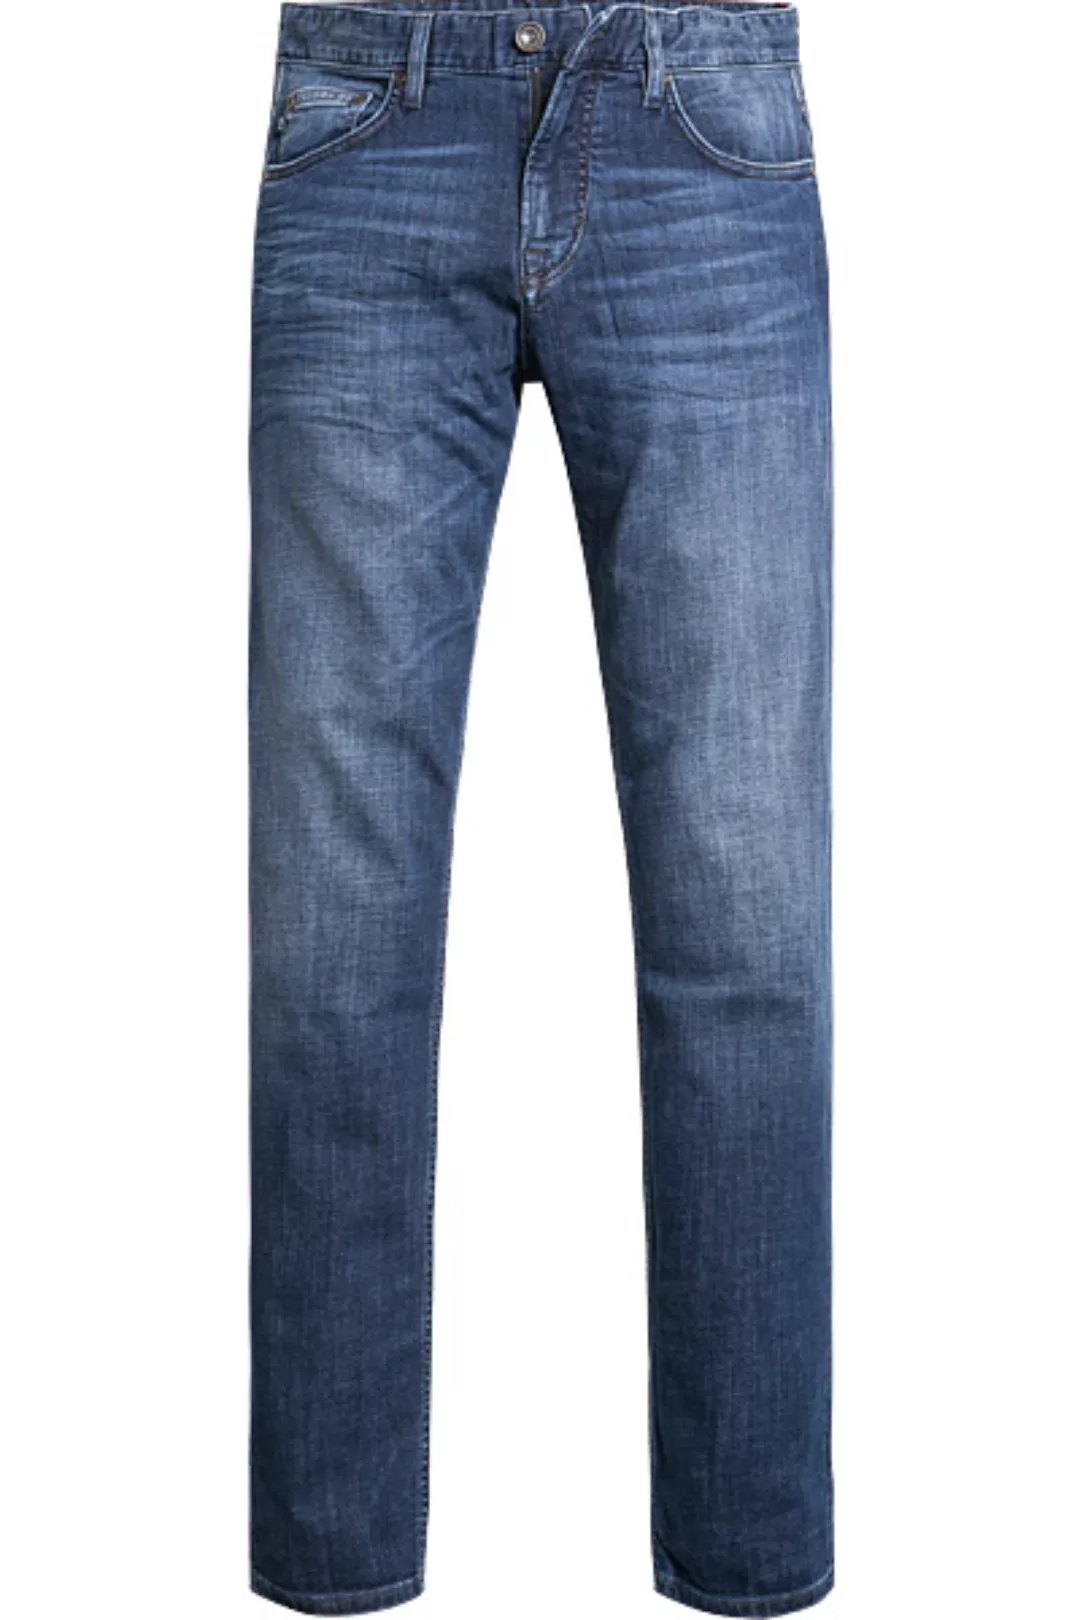 JOOP! Jeans Mitch 30002376/425 günstig online kaufen